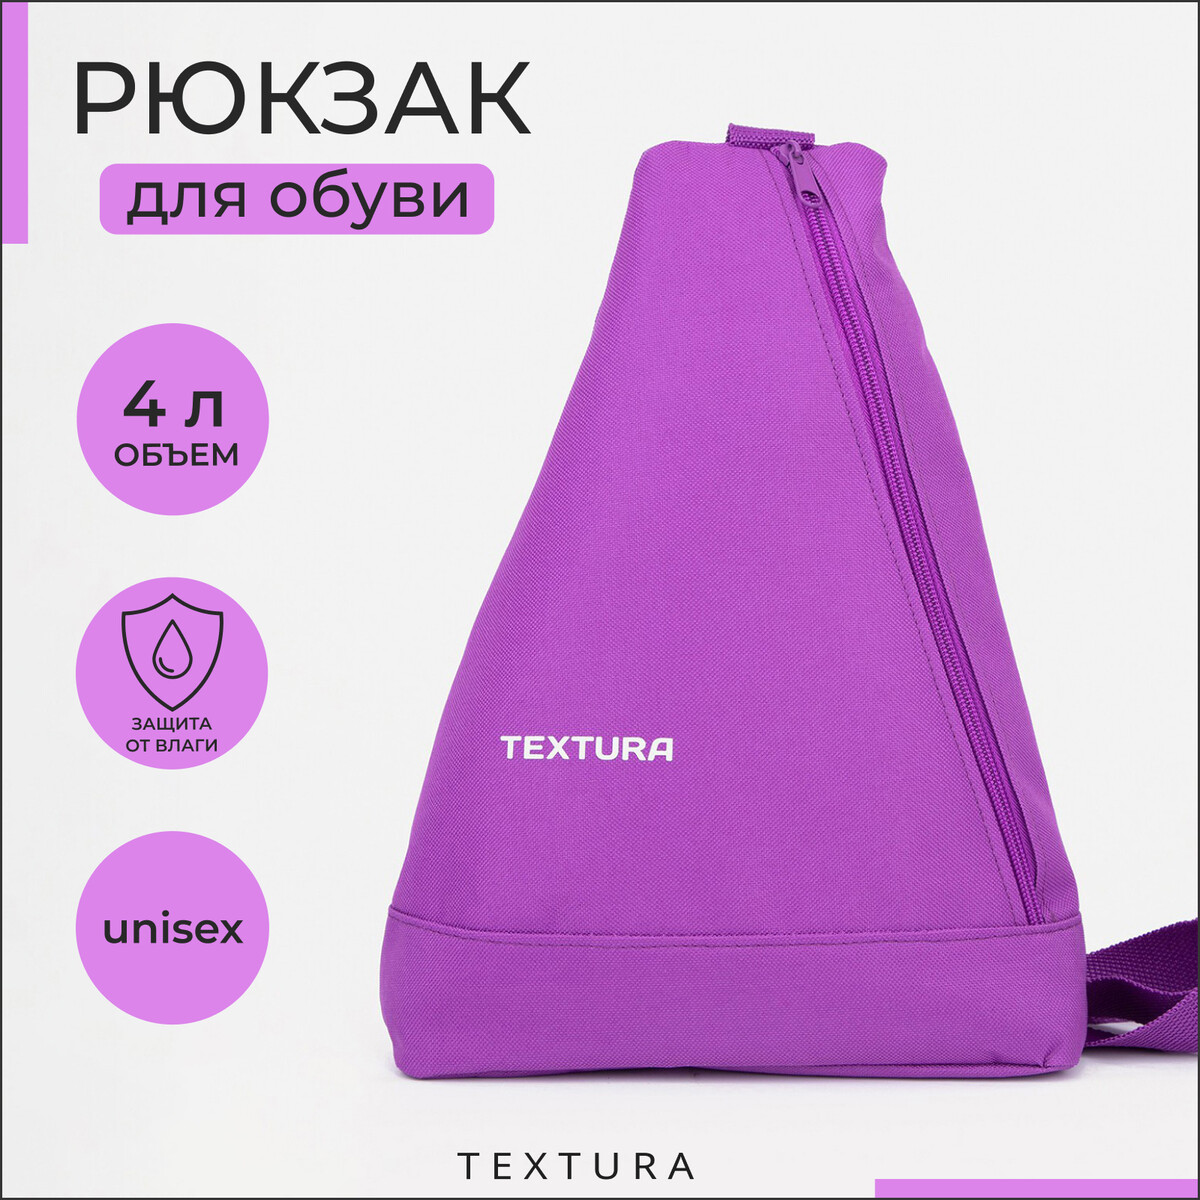 Рюкзак для обуви на молнии, до 35 размера,textura, цвет сиреневый рюкзак для обуви на молнии до 35 размера textura фиолетовый